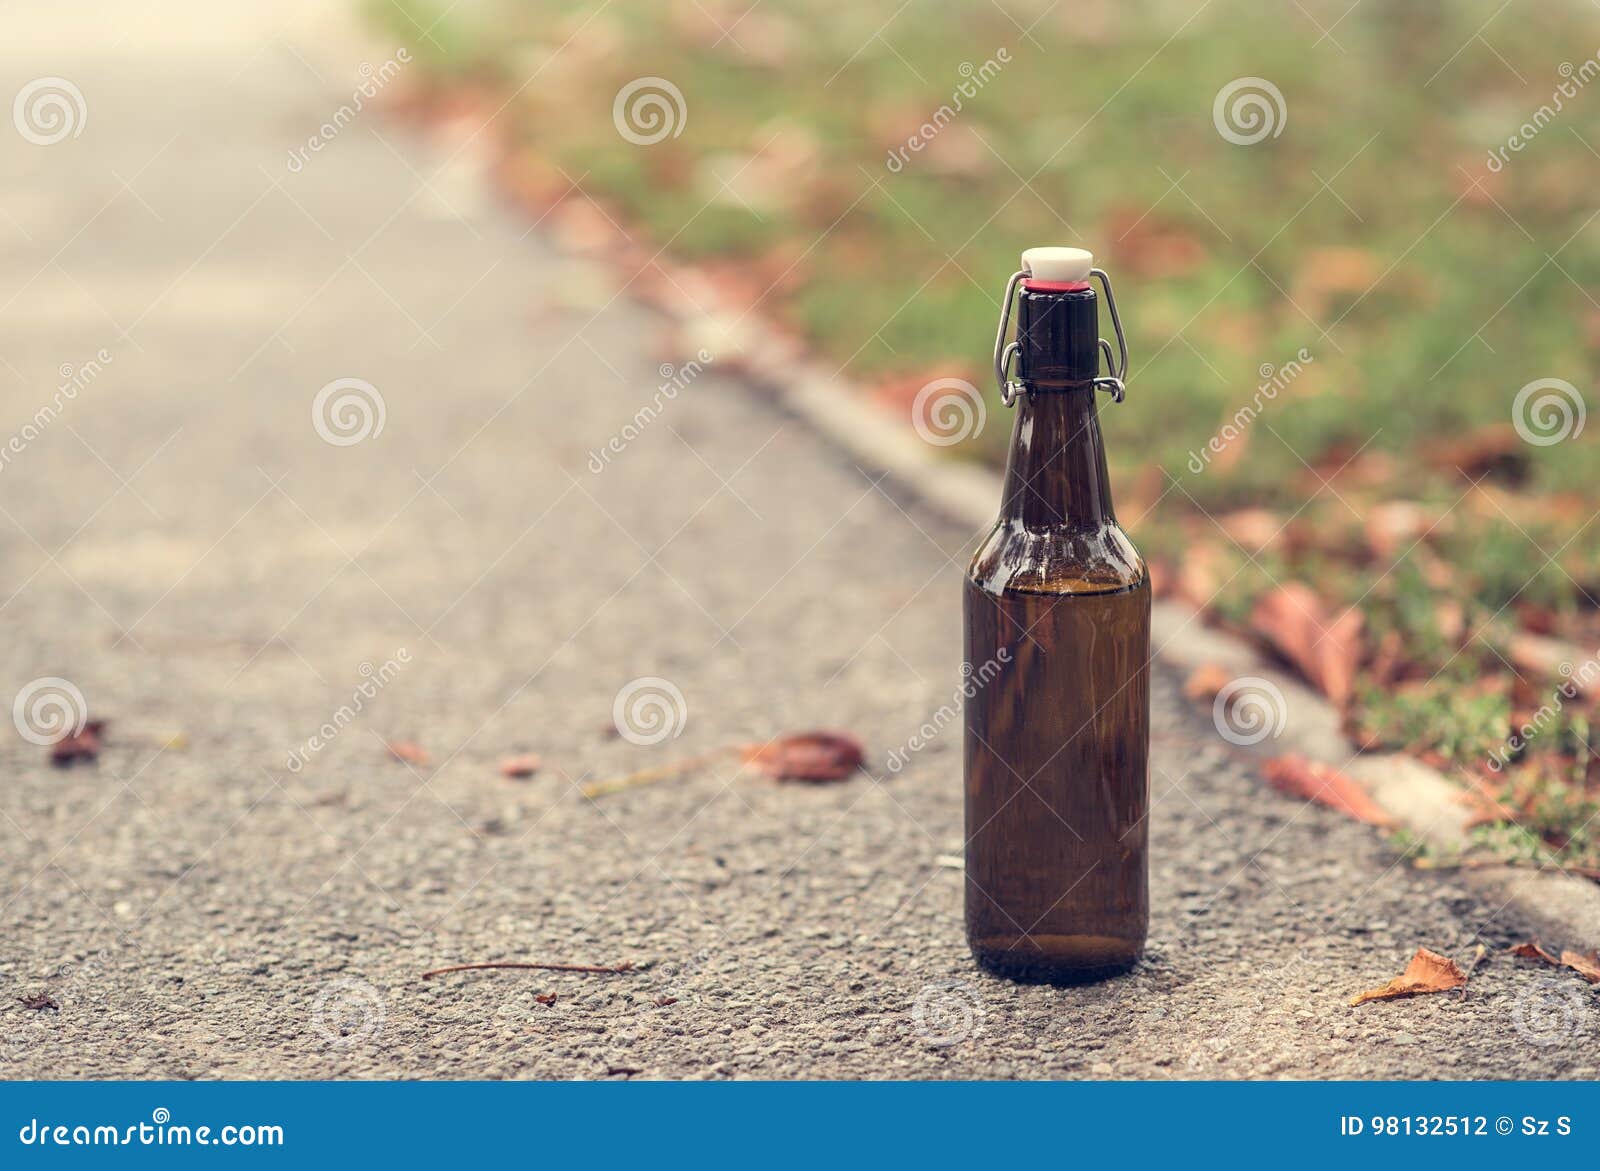 К чему снятся пустые бутылки. Бутылка на асфальте. Стеклянная бутылка на асфальте. Пустые бутылки на улице.